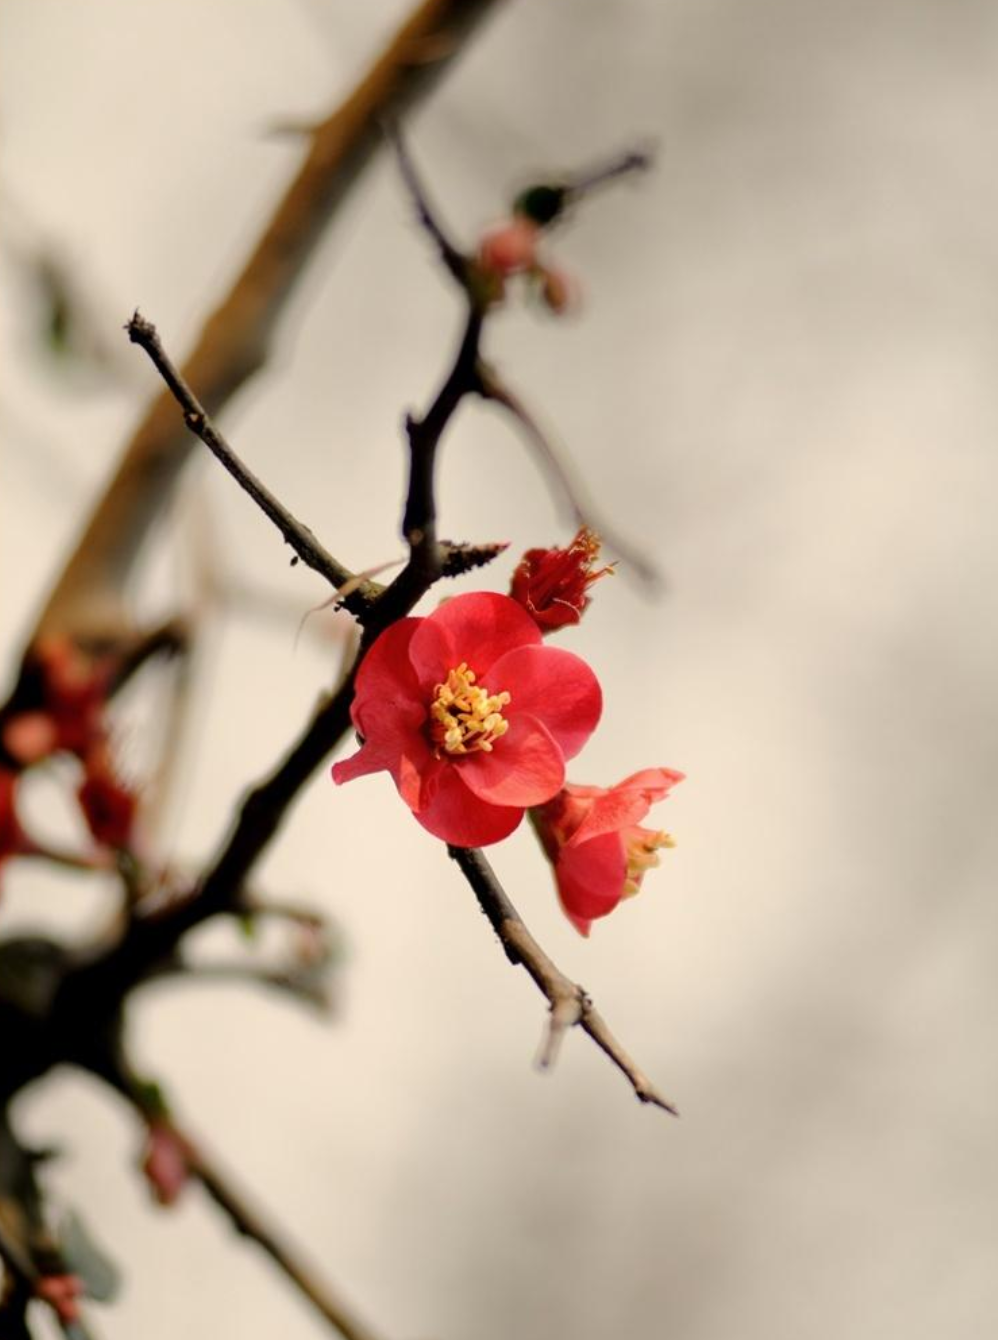 梅花香自苦寒来，十首观梅的诗词，一起欣赏美丽的梅花吧-第6张图片-诗句网